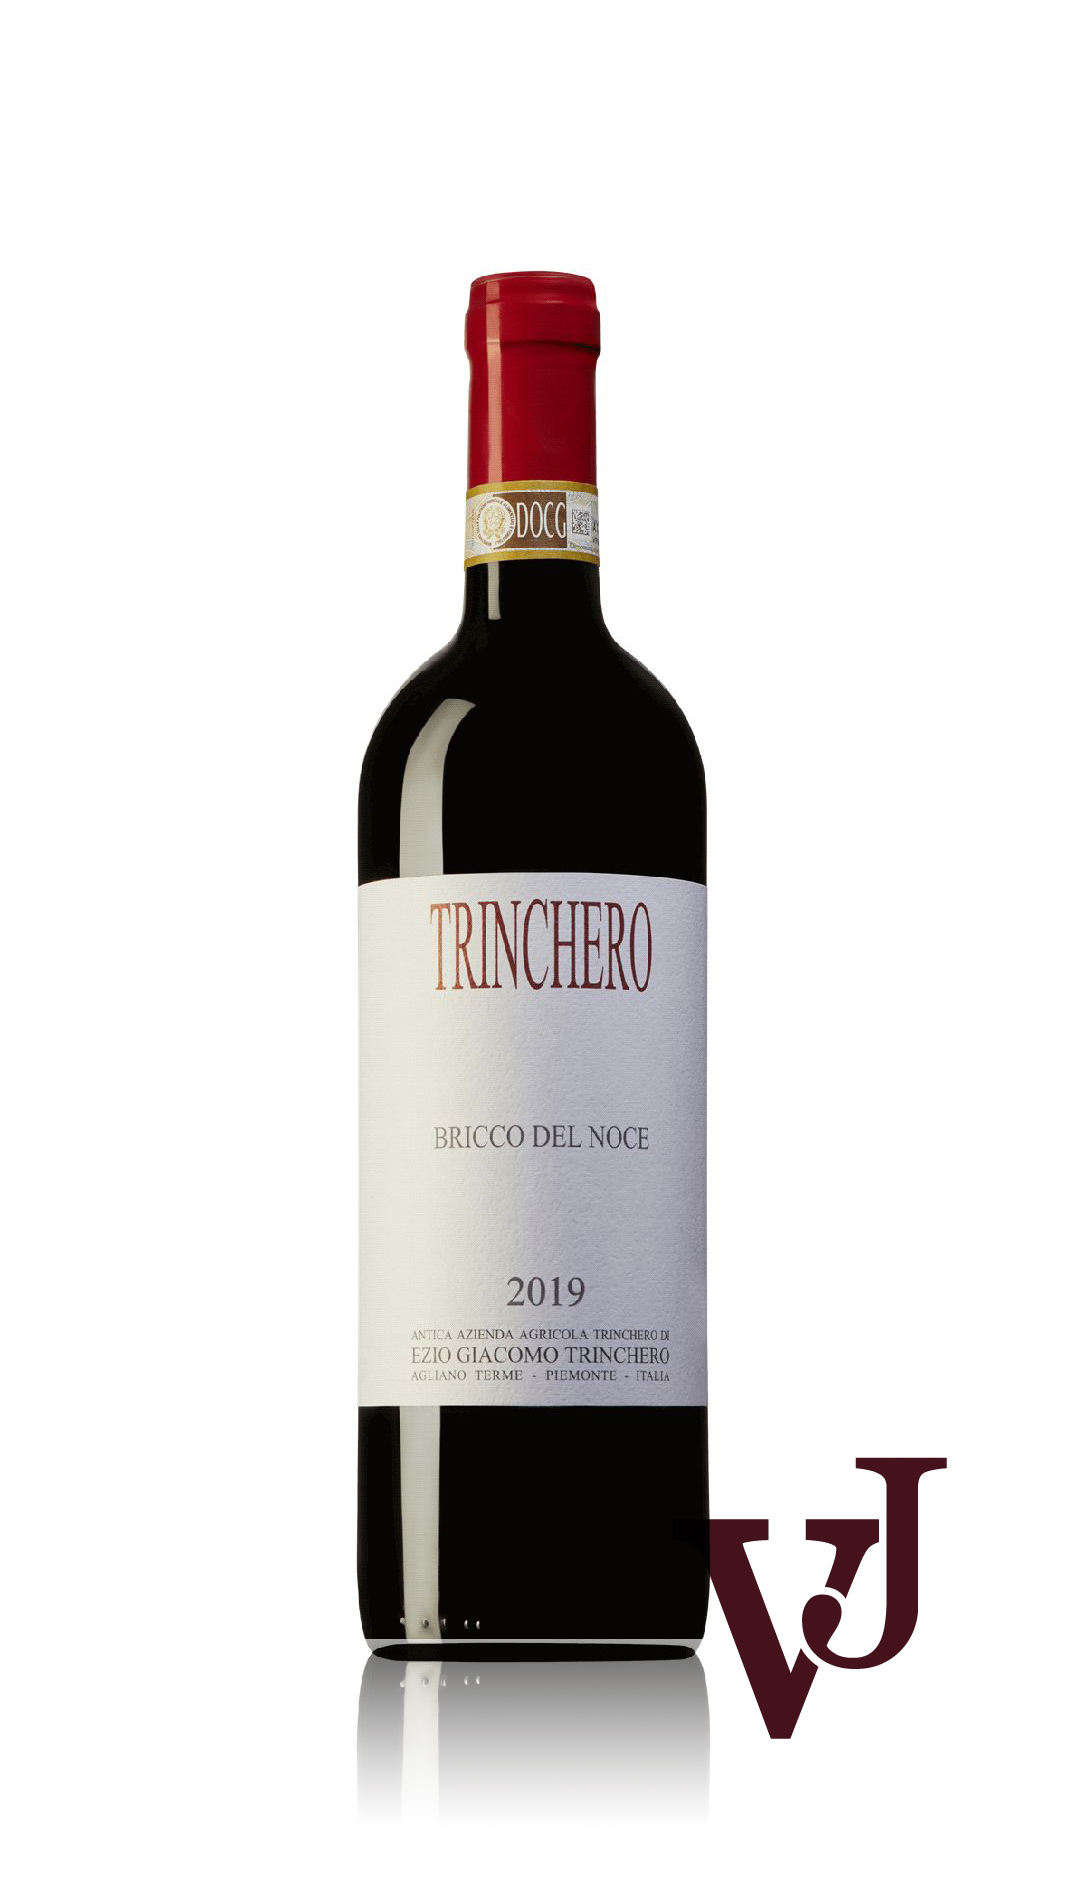 Rött Vin - Bricco del Noce Azienda Agricola Ezio Trinchero 2019 artikel nummer 9391401 från producenten Azienda Agricola Ezio Trinchero från området Italien.